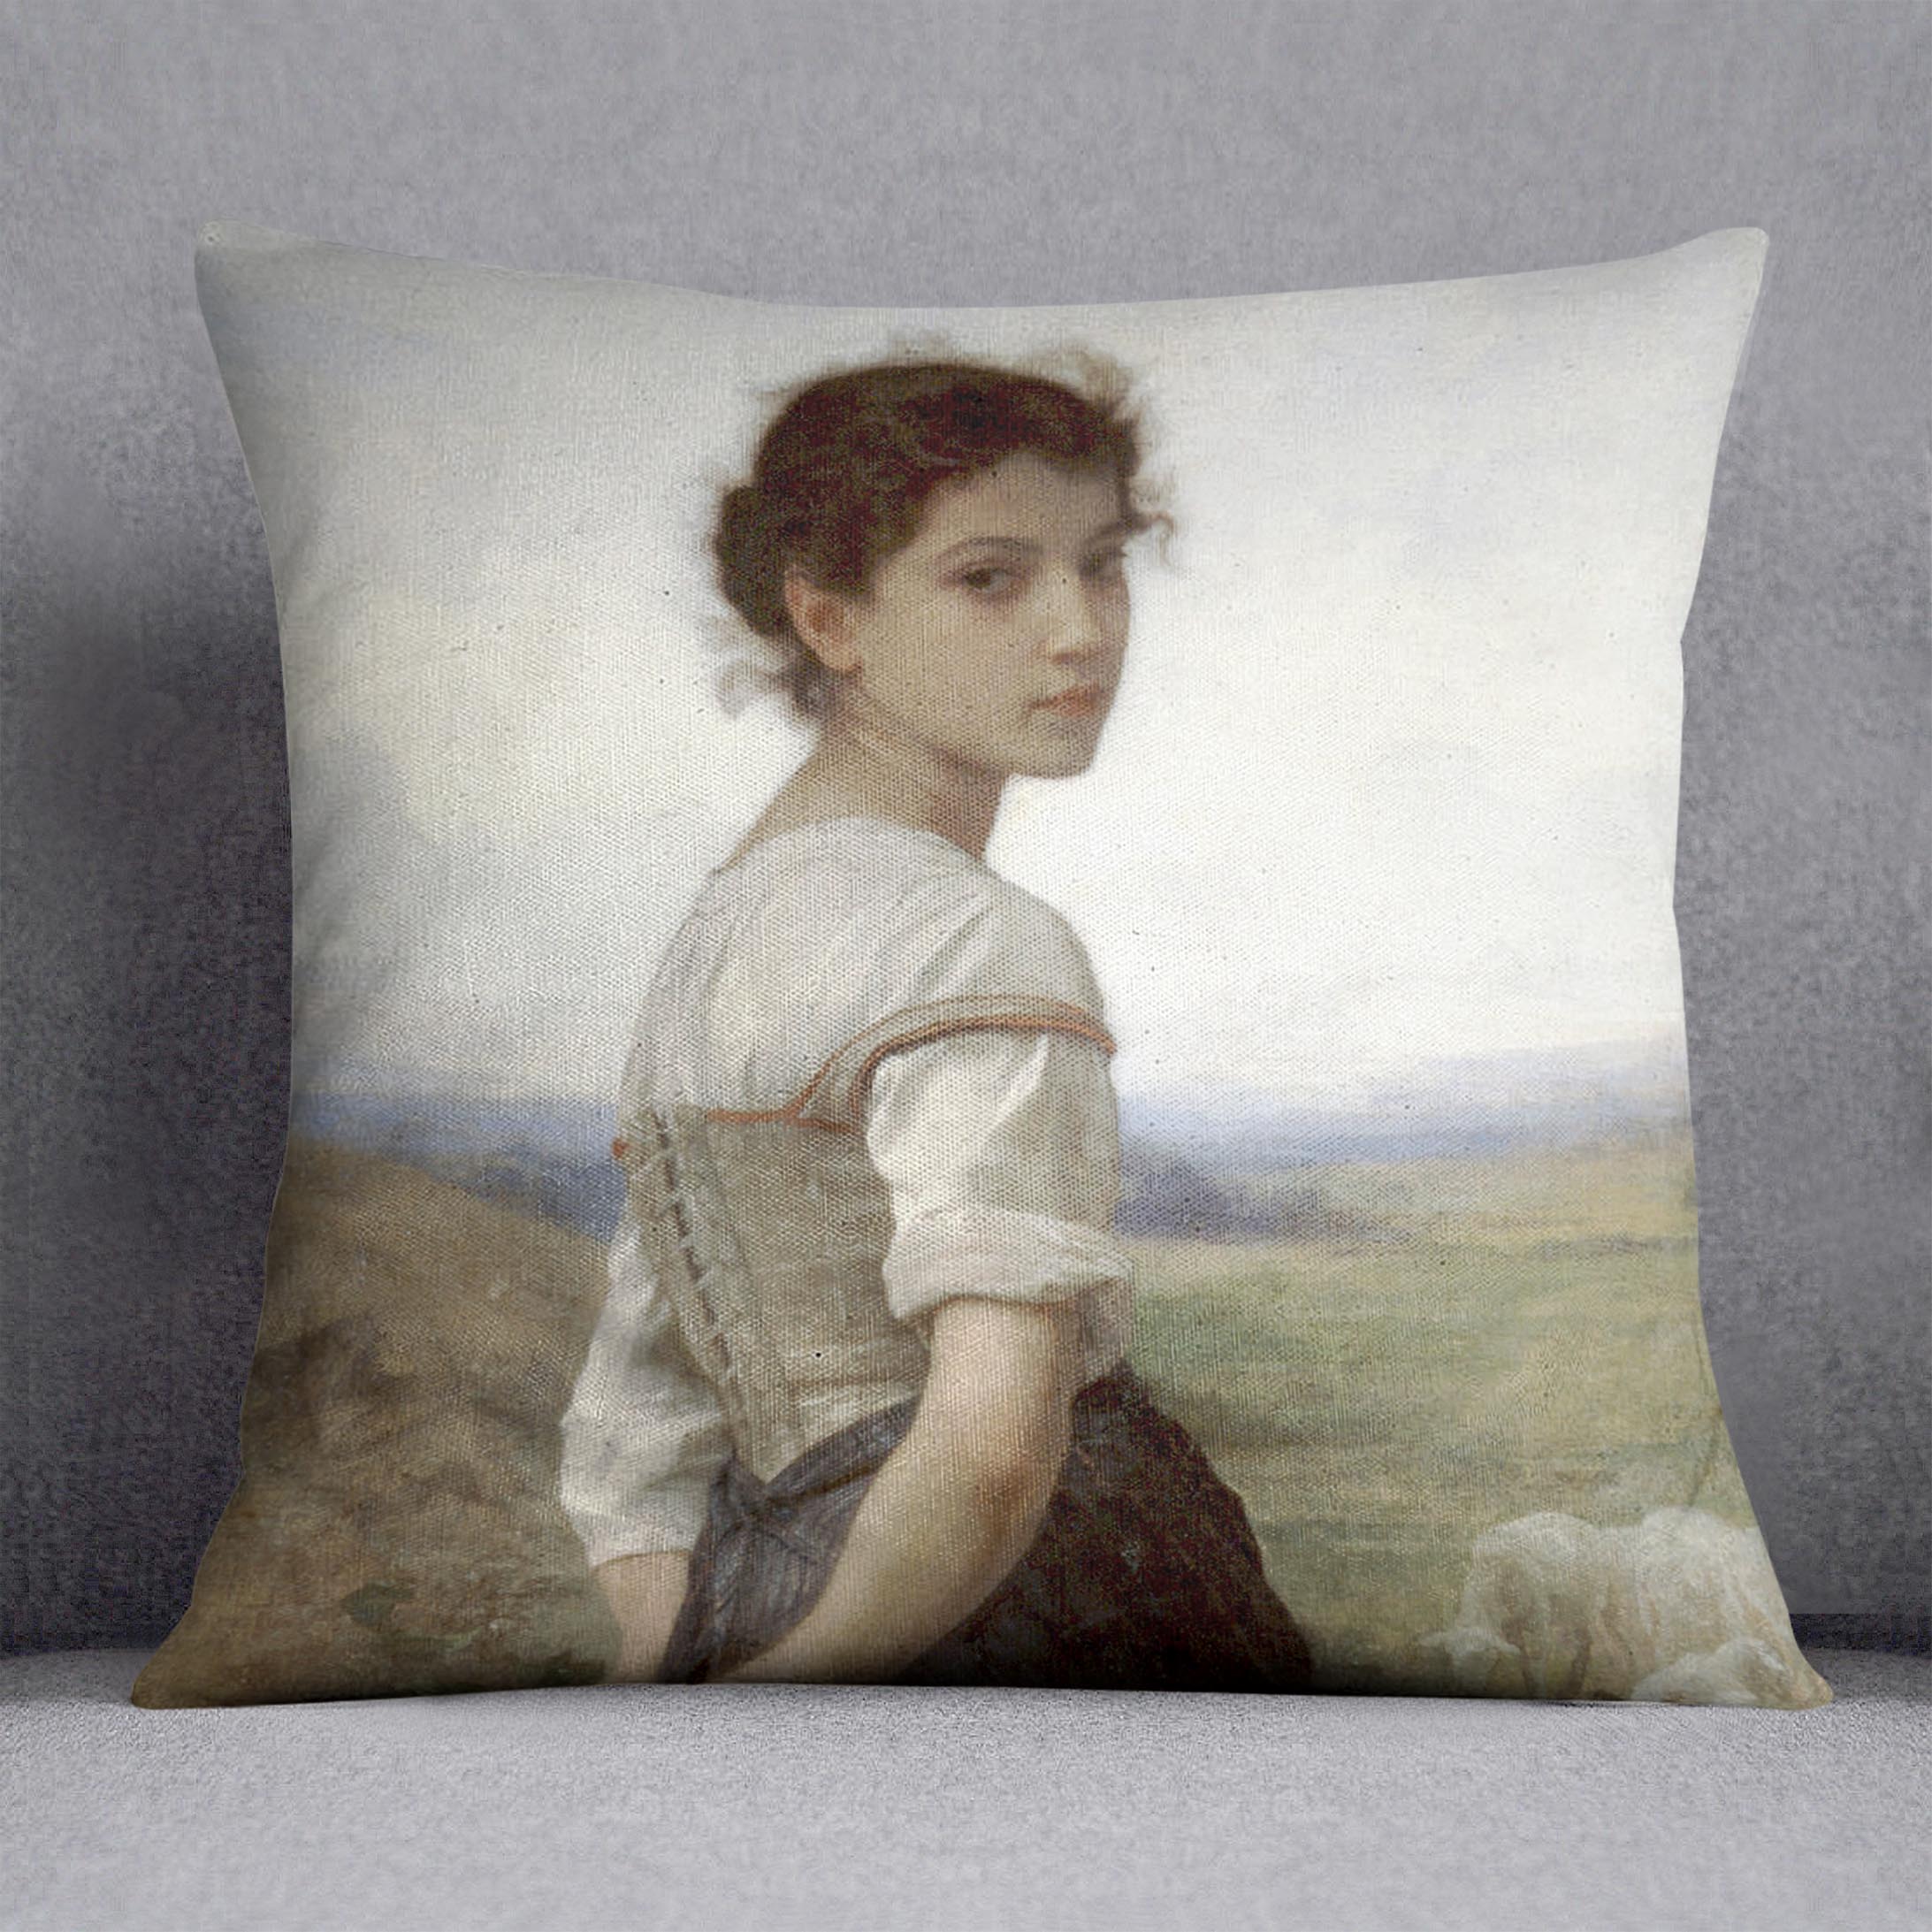 The Young Shepherdess By Bouguereau Cushion